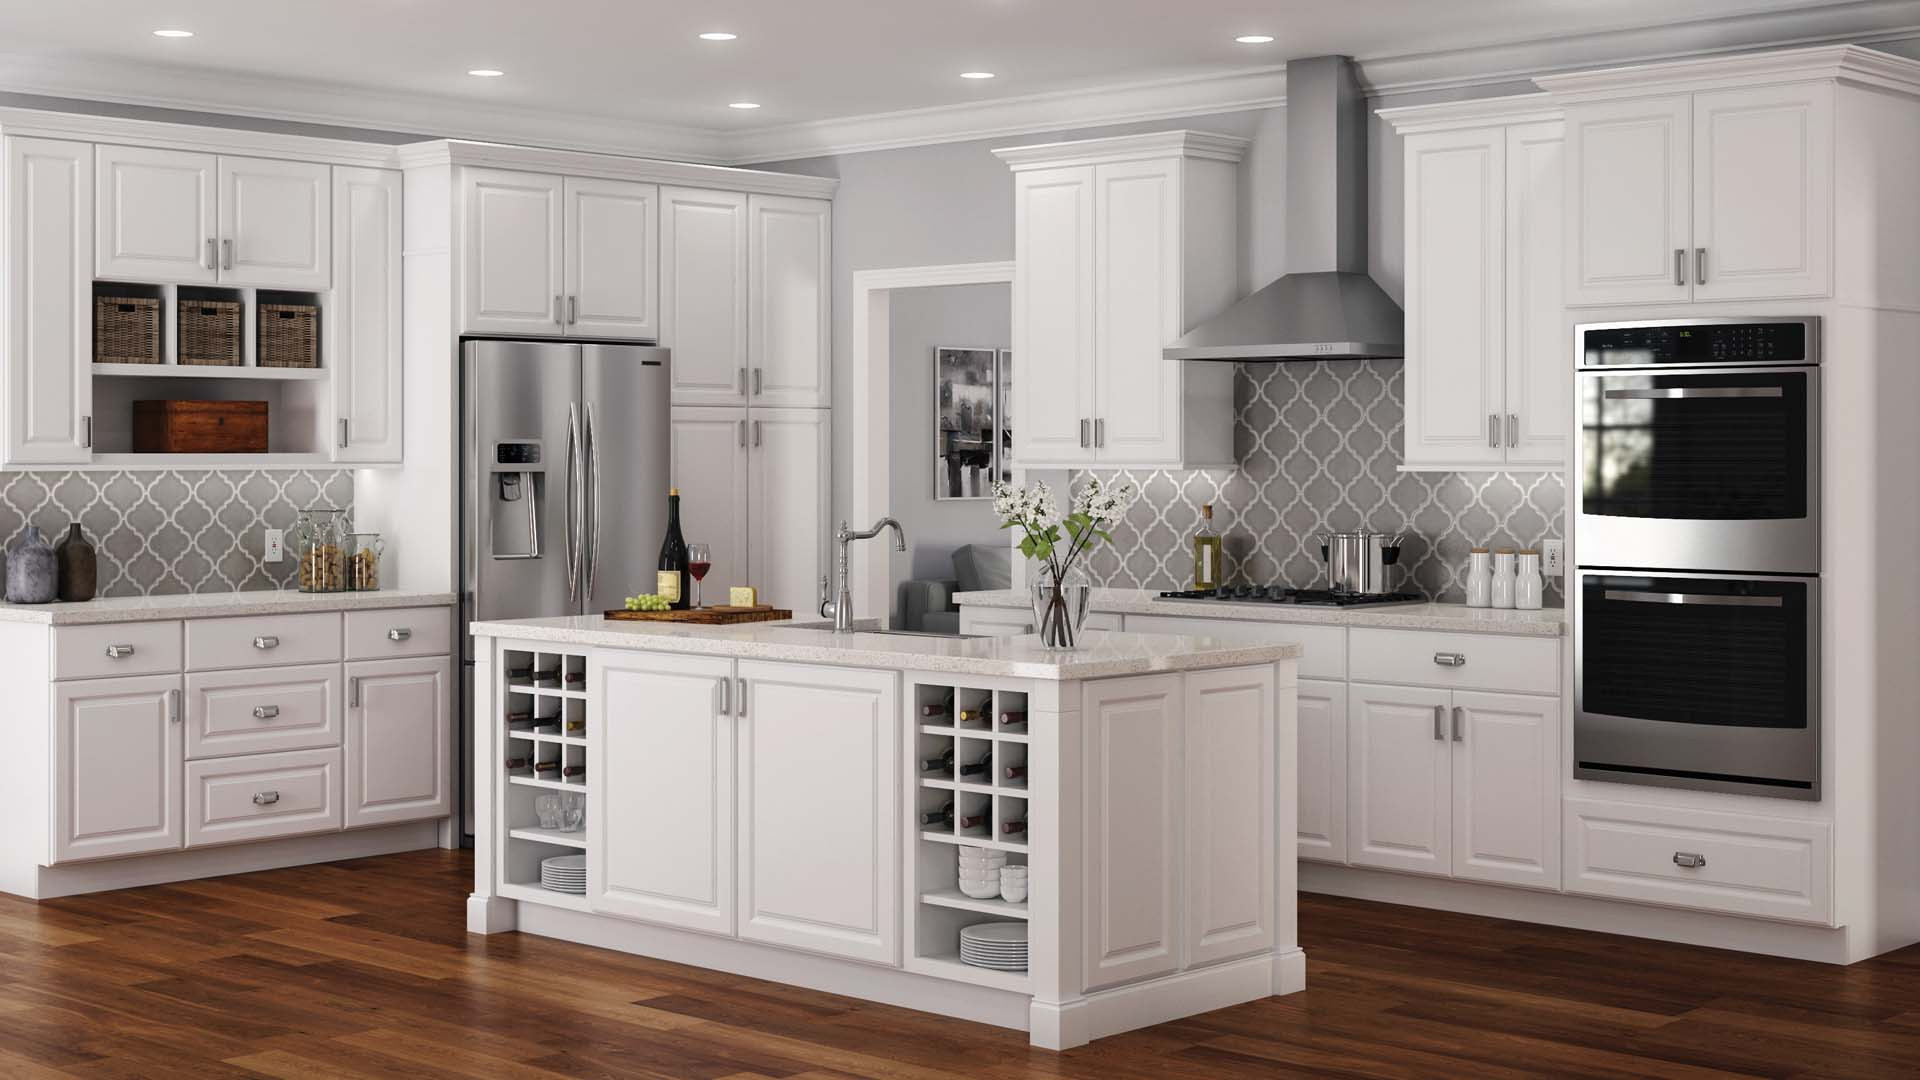 Kitchen Cabinet White
 Hampton Cabinet Accessories in White – Kitchen – The Home